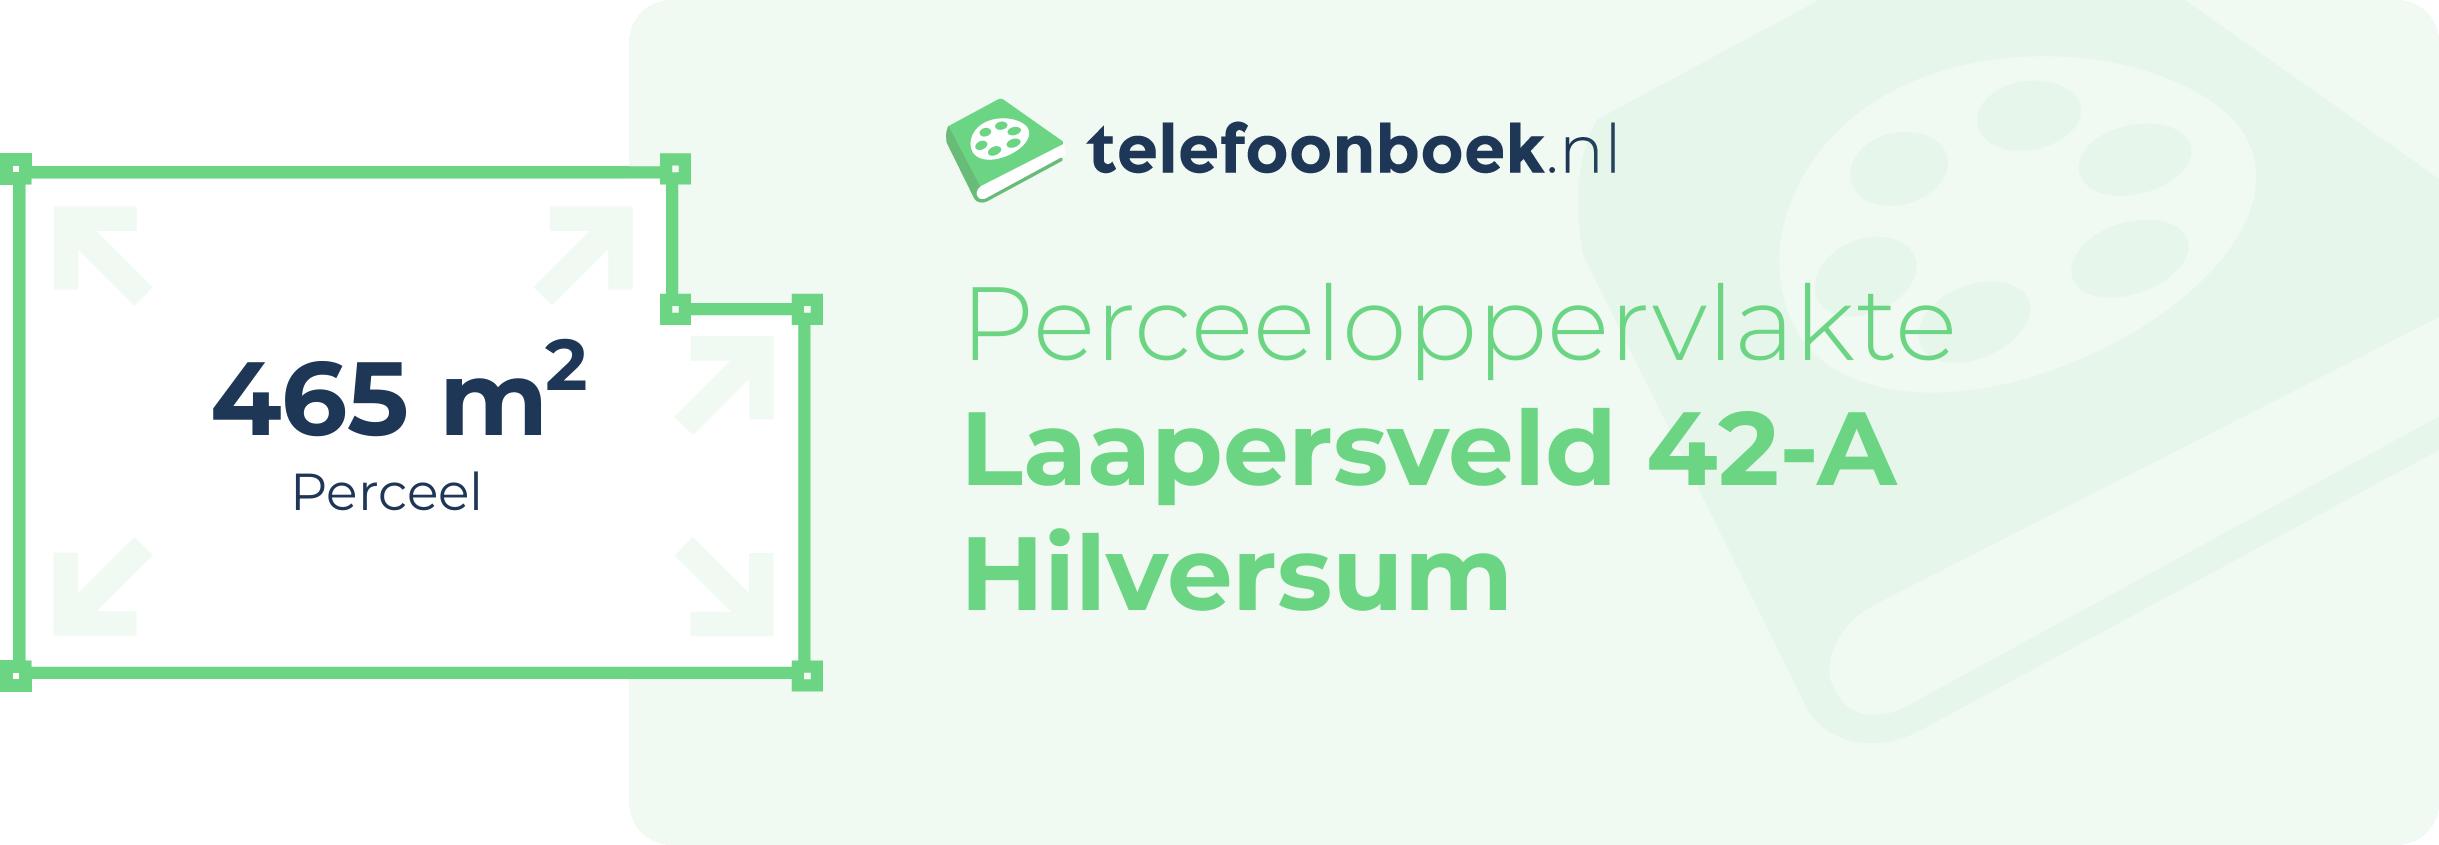 Perceeloppervlakte Laapersveld 42-A Hilversum